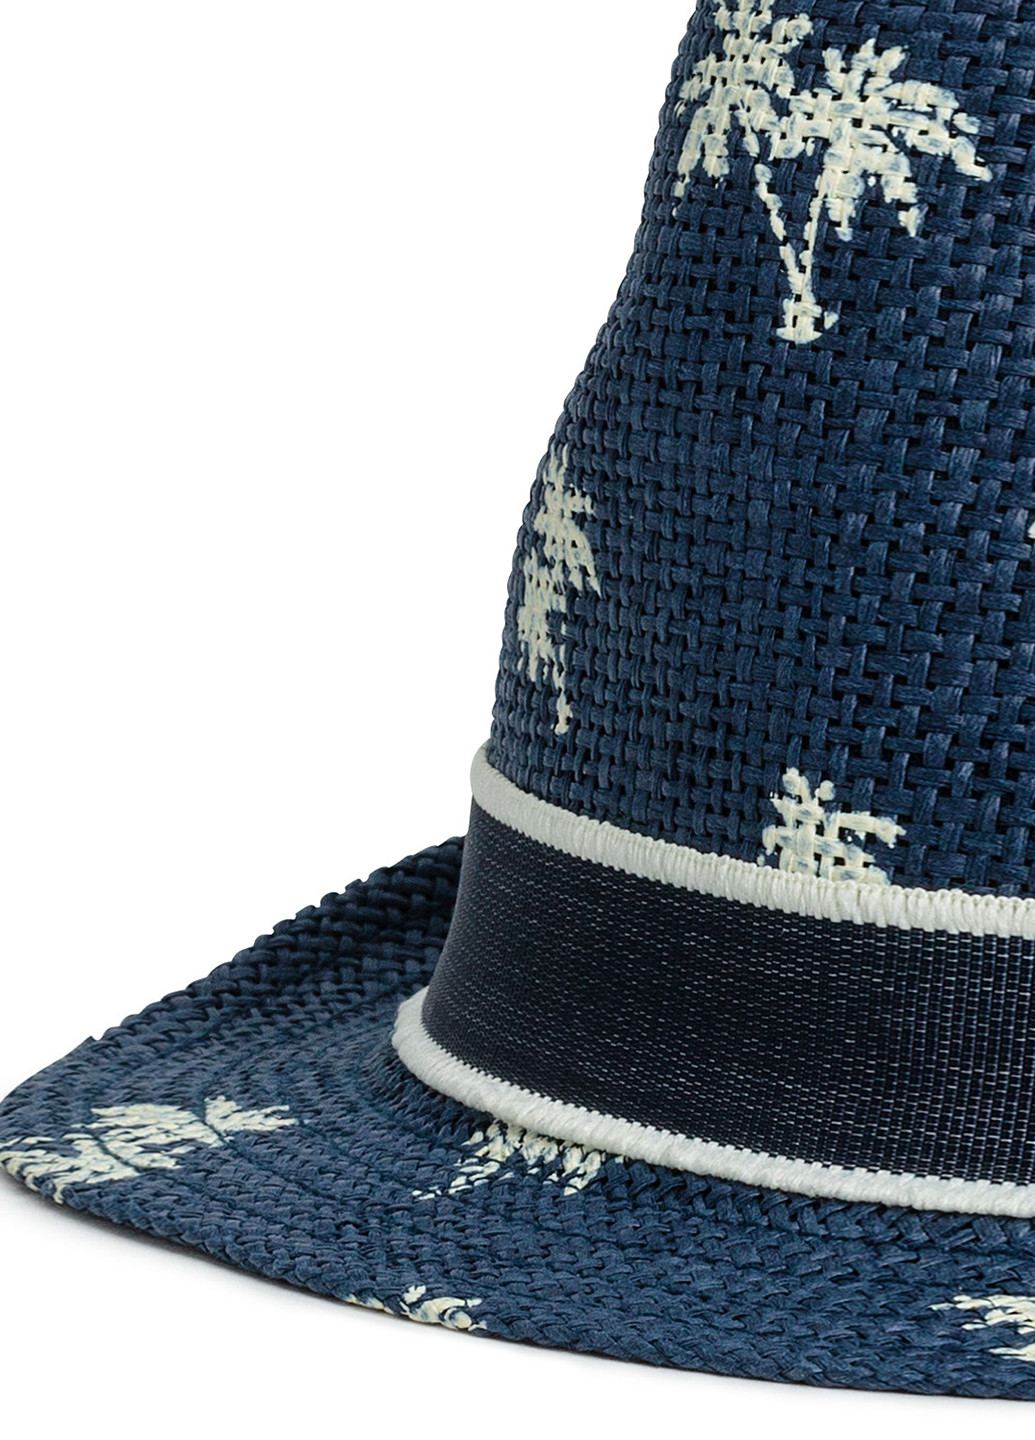 Шляпа H&M рисунок синяя кэжуал искусственная солома